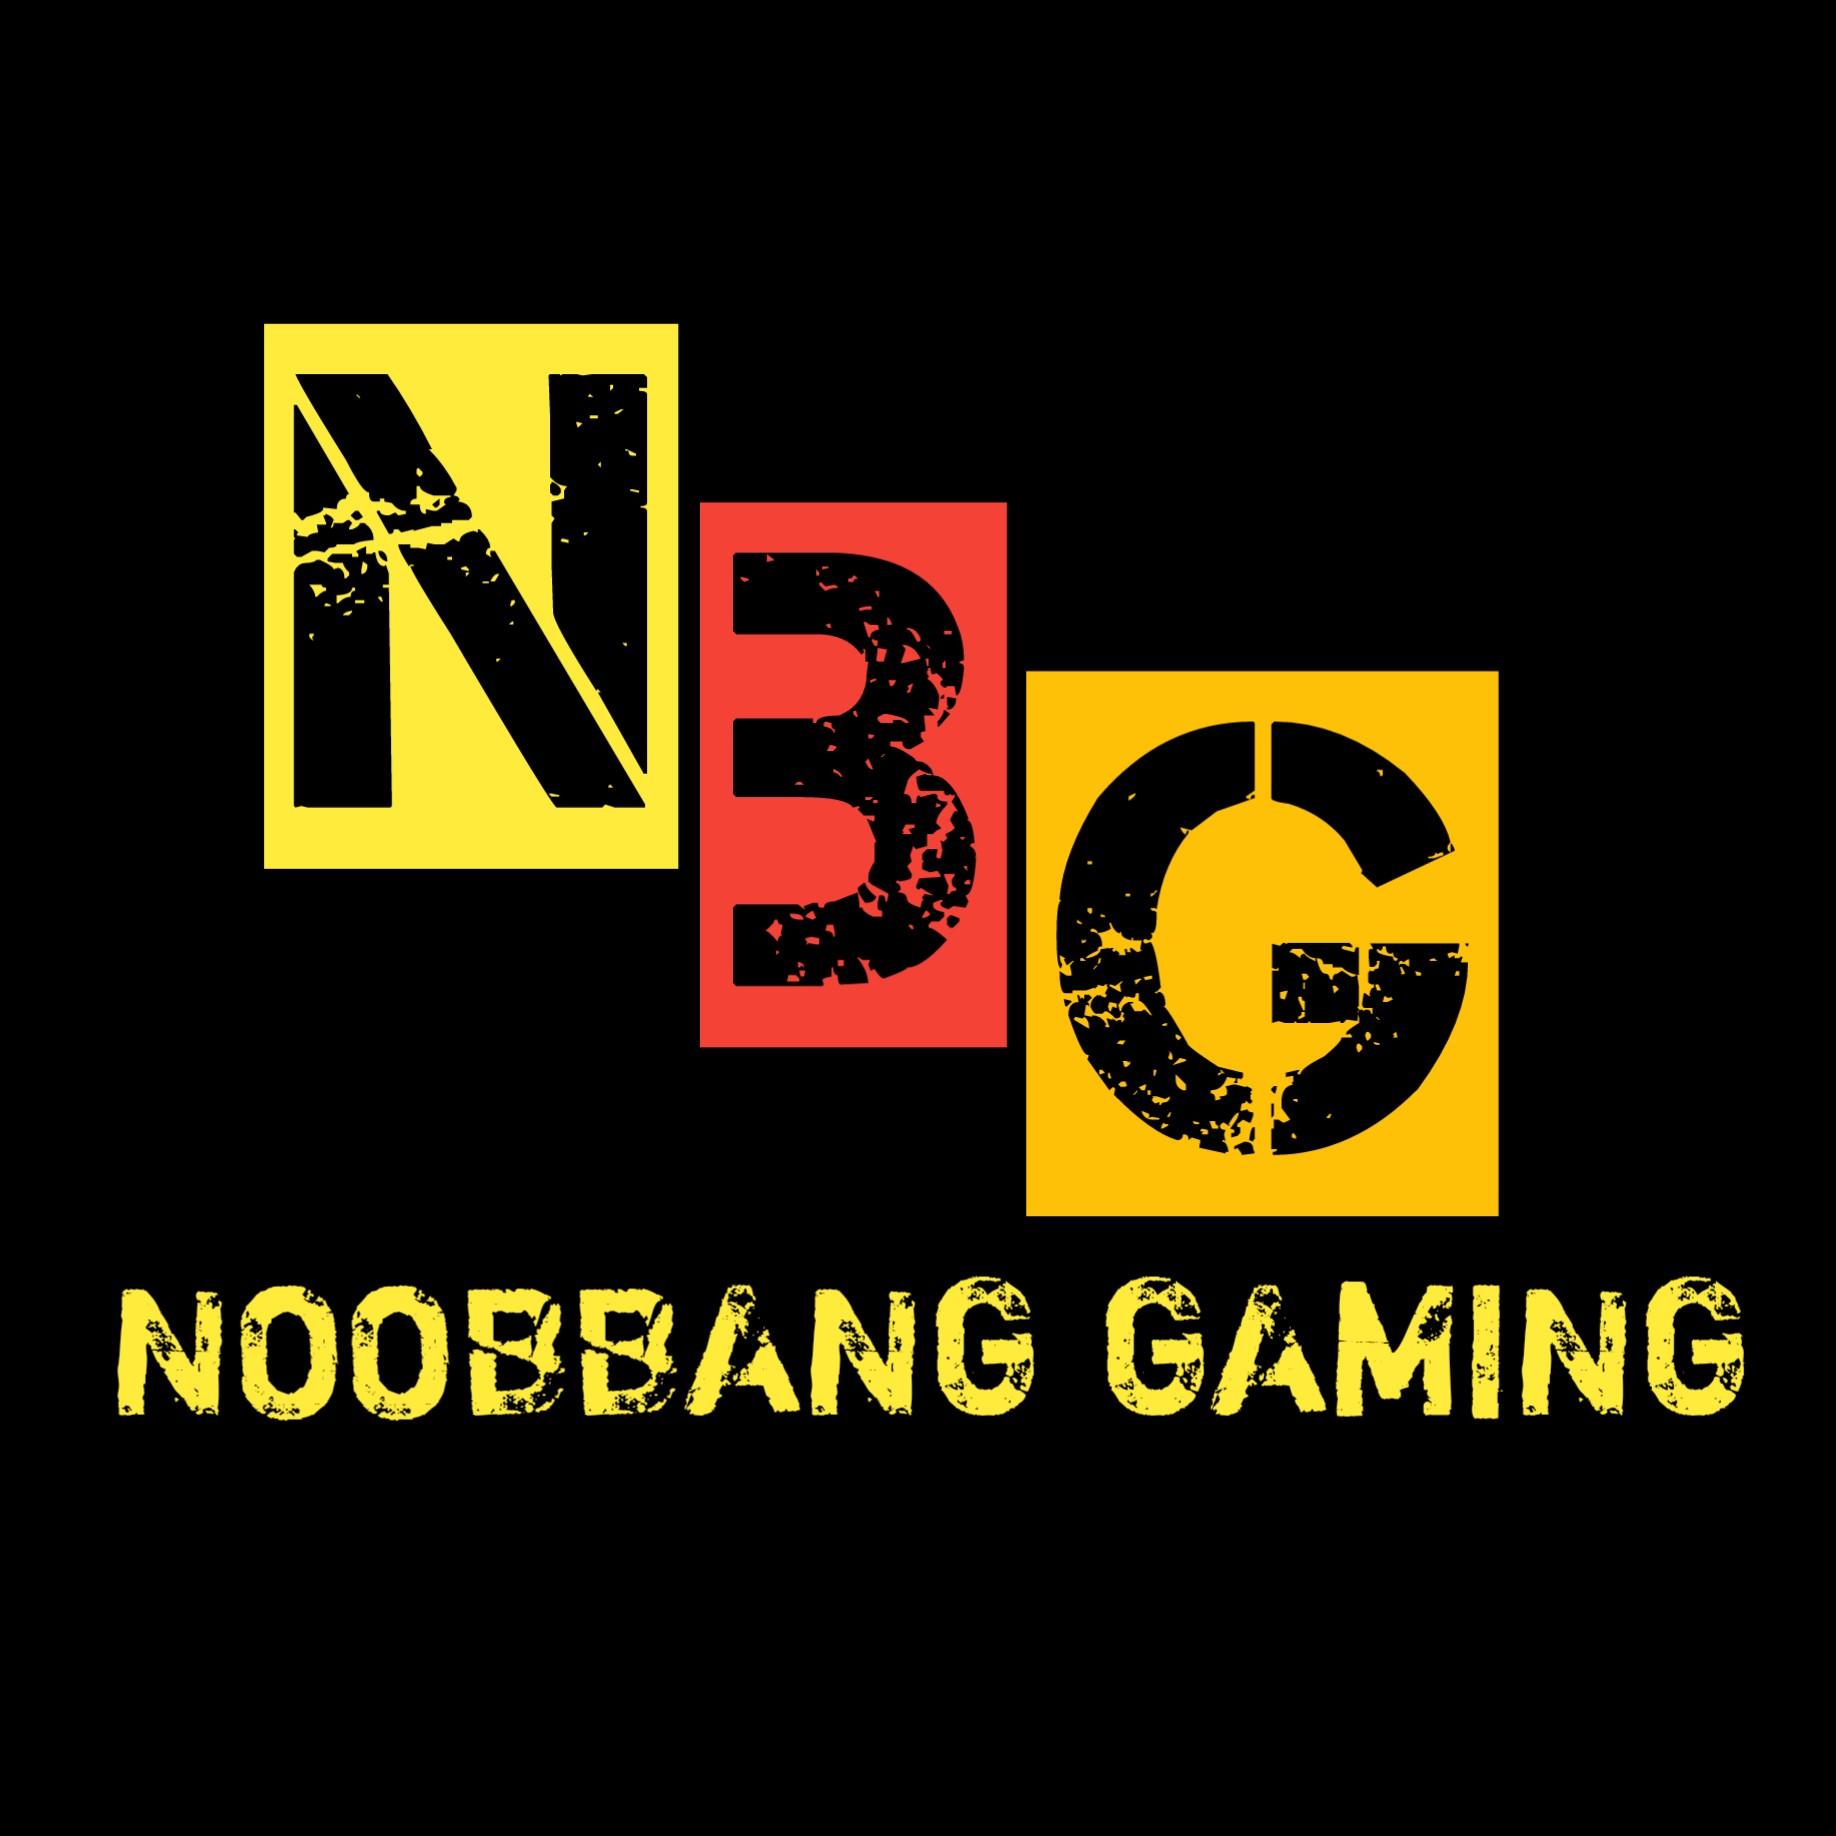 NoobBang Gaming